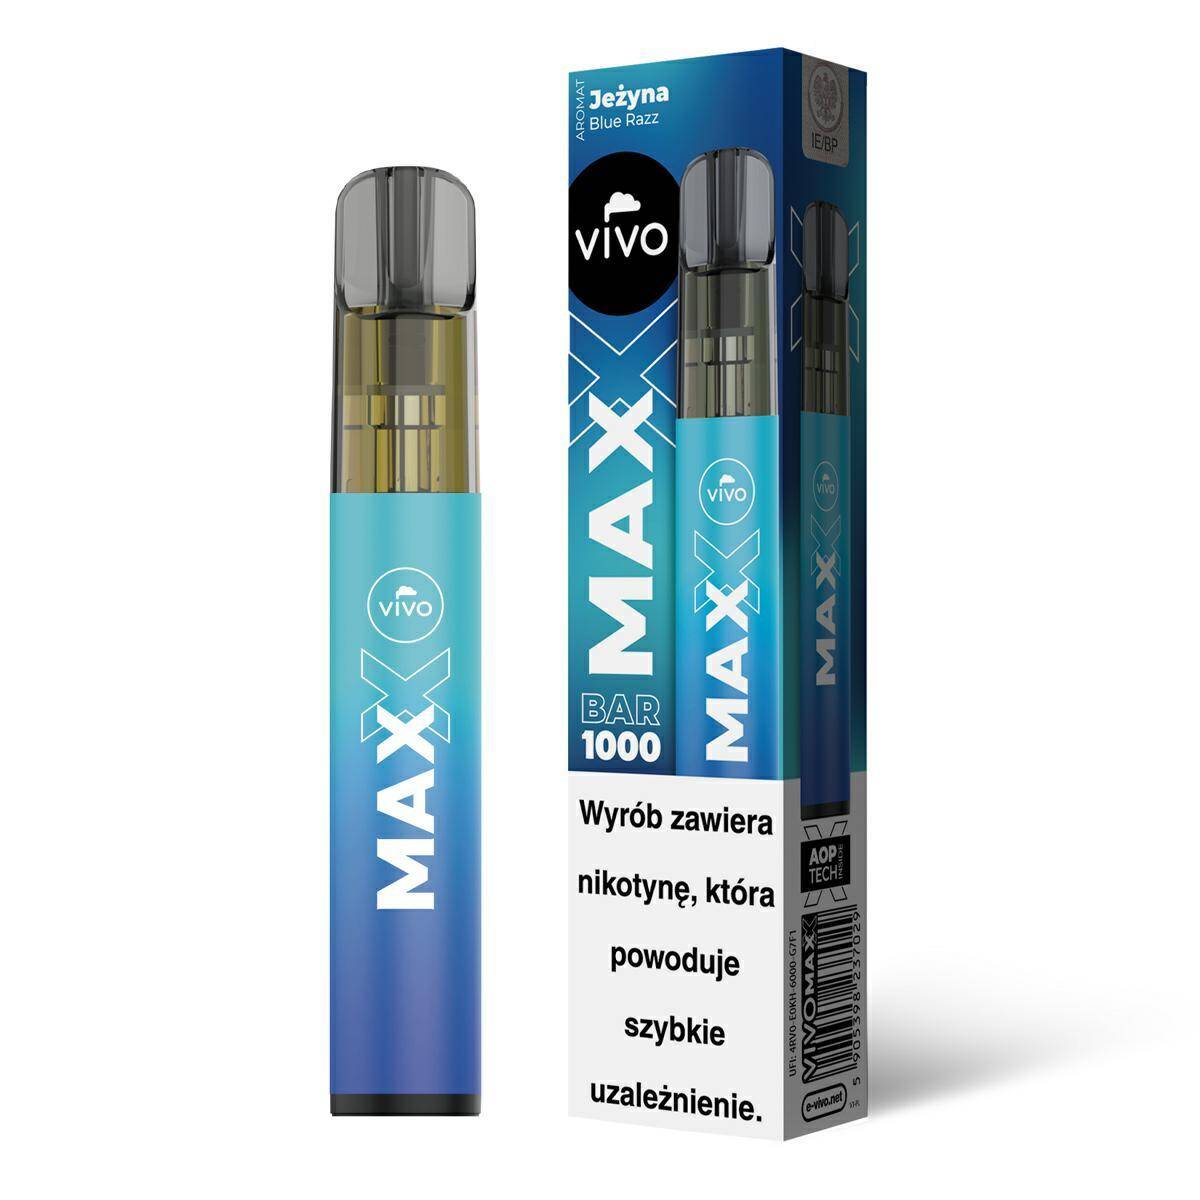 Disposable e-cigarette VIVO MAXX - Blue Razz 20mg